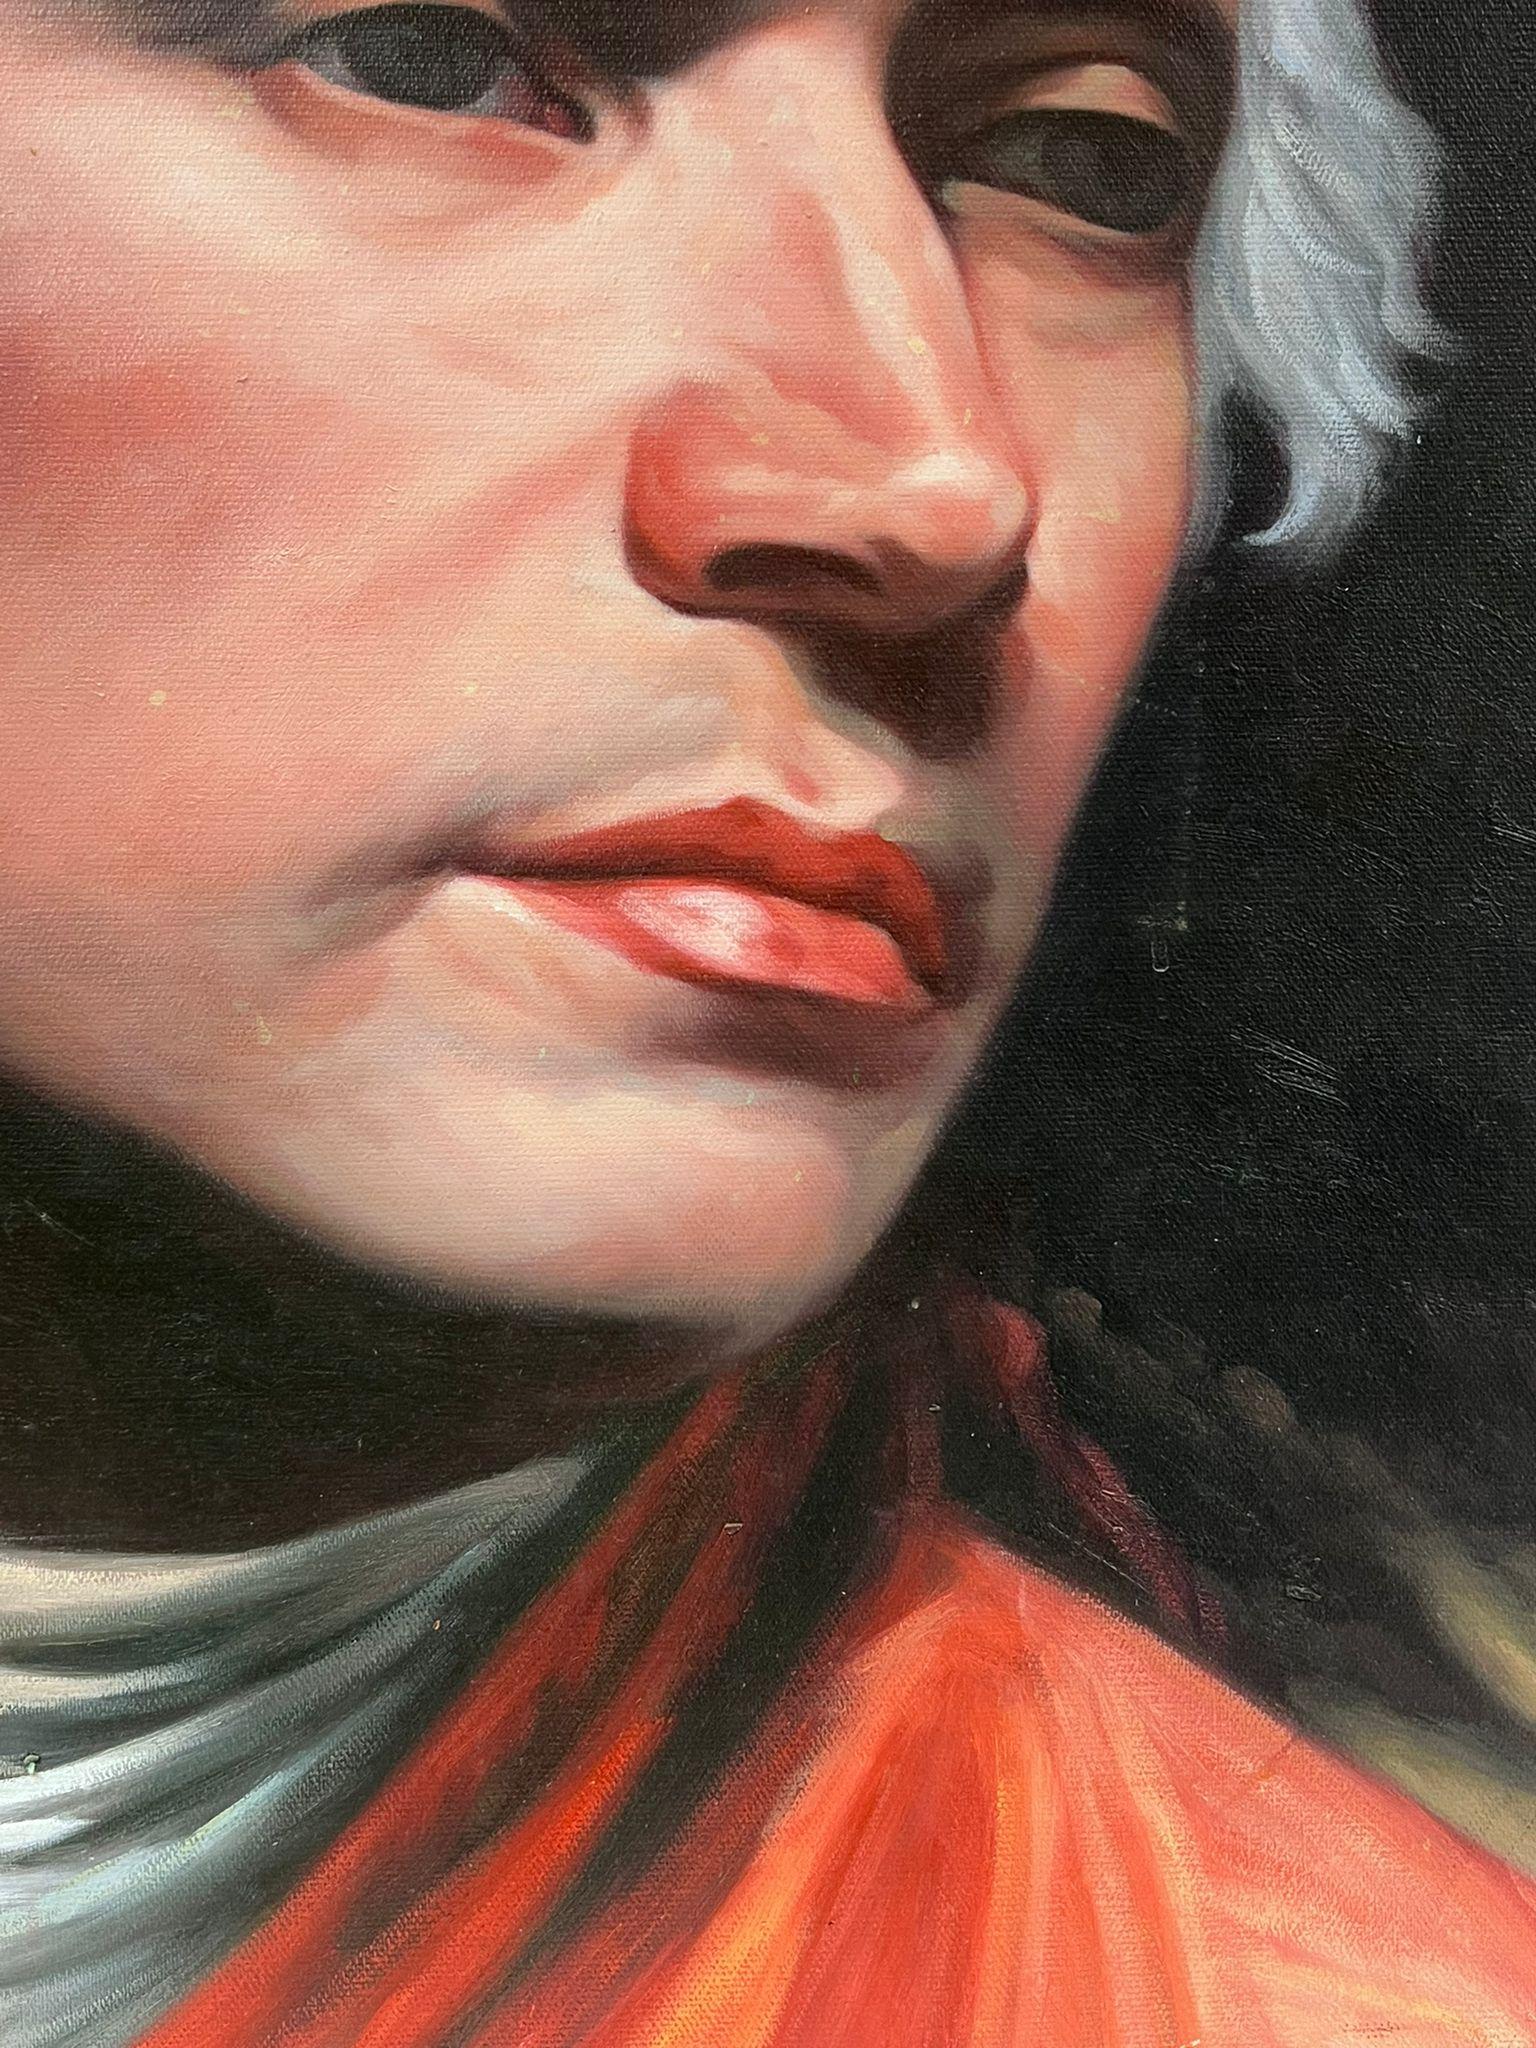 Ölgemälde, Porträt eines aristokratischen, ge Wigged Gentleman, Ölgemälde – Painting von European Artist